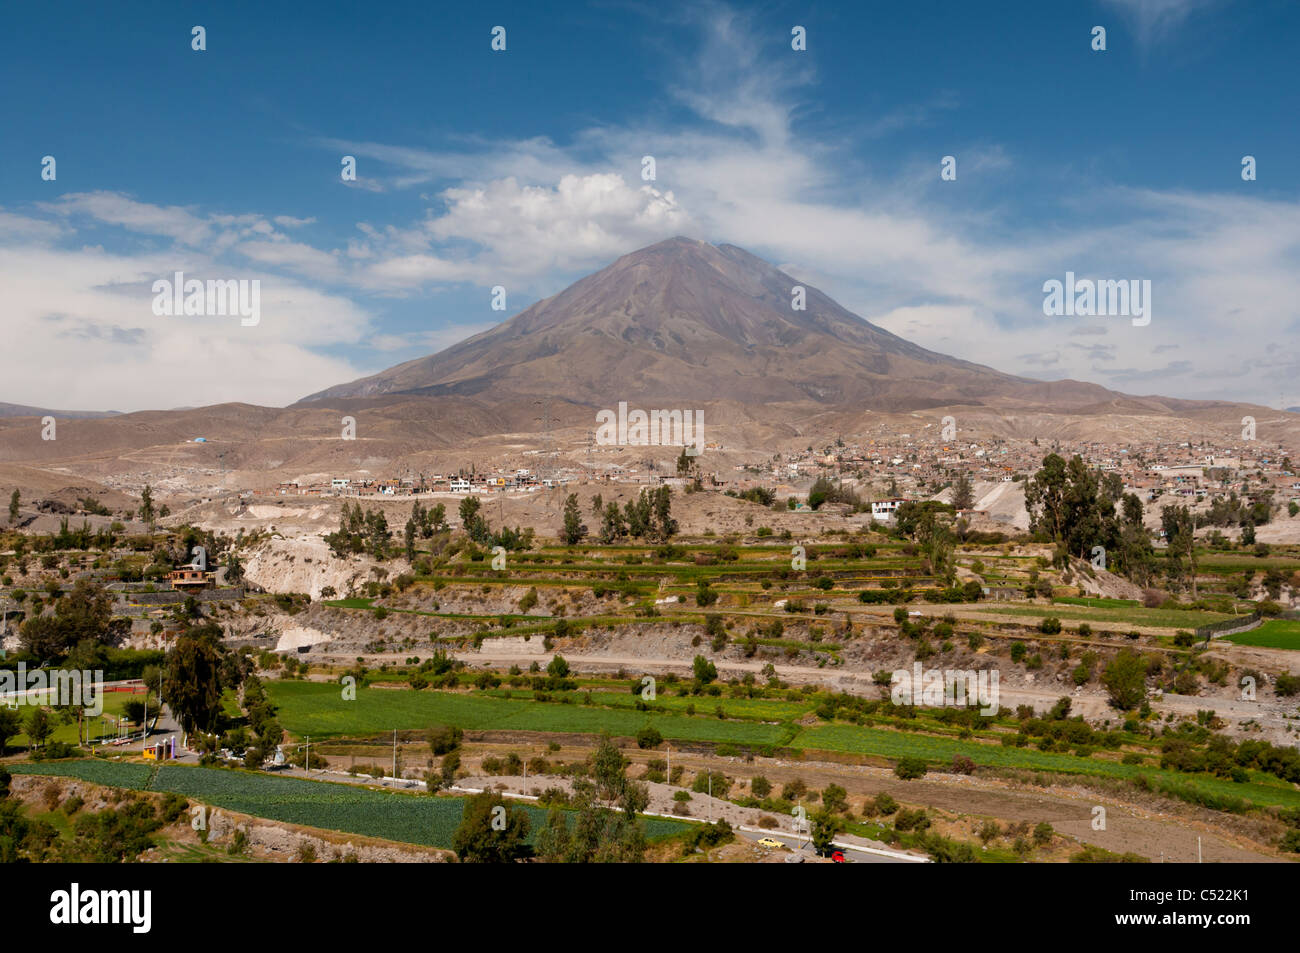 Vulkans El Misti mit landwirtschaftlichen Flächen in der Nähe von Arequipa, Peru, Südamerika. Stockfoto